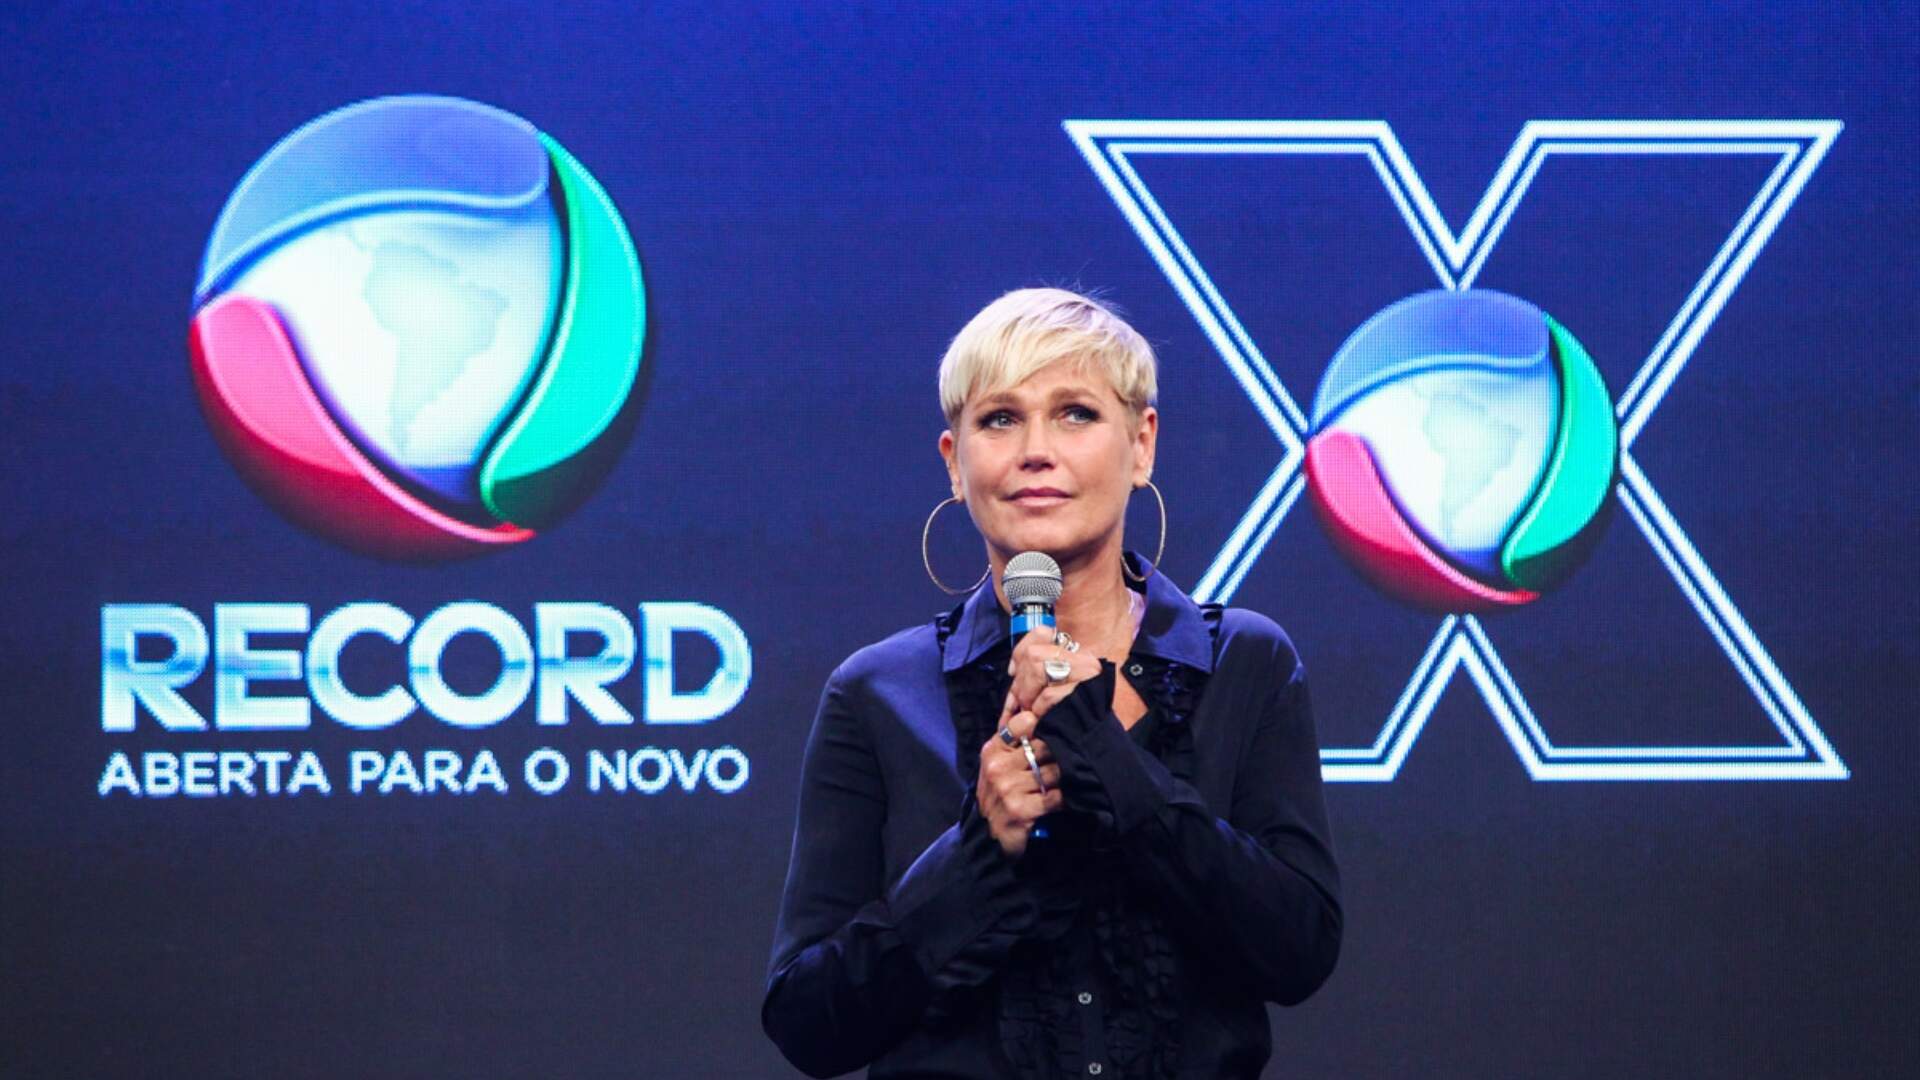 Xuxa relembra demissão da Globo sem motivo: “Eles não me queriam” - Metropolitana FM